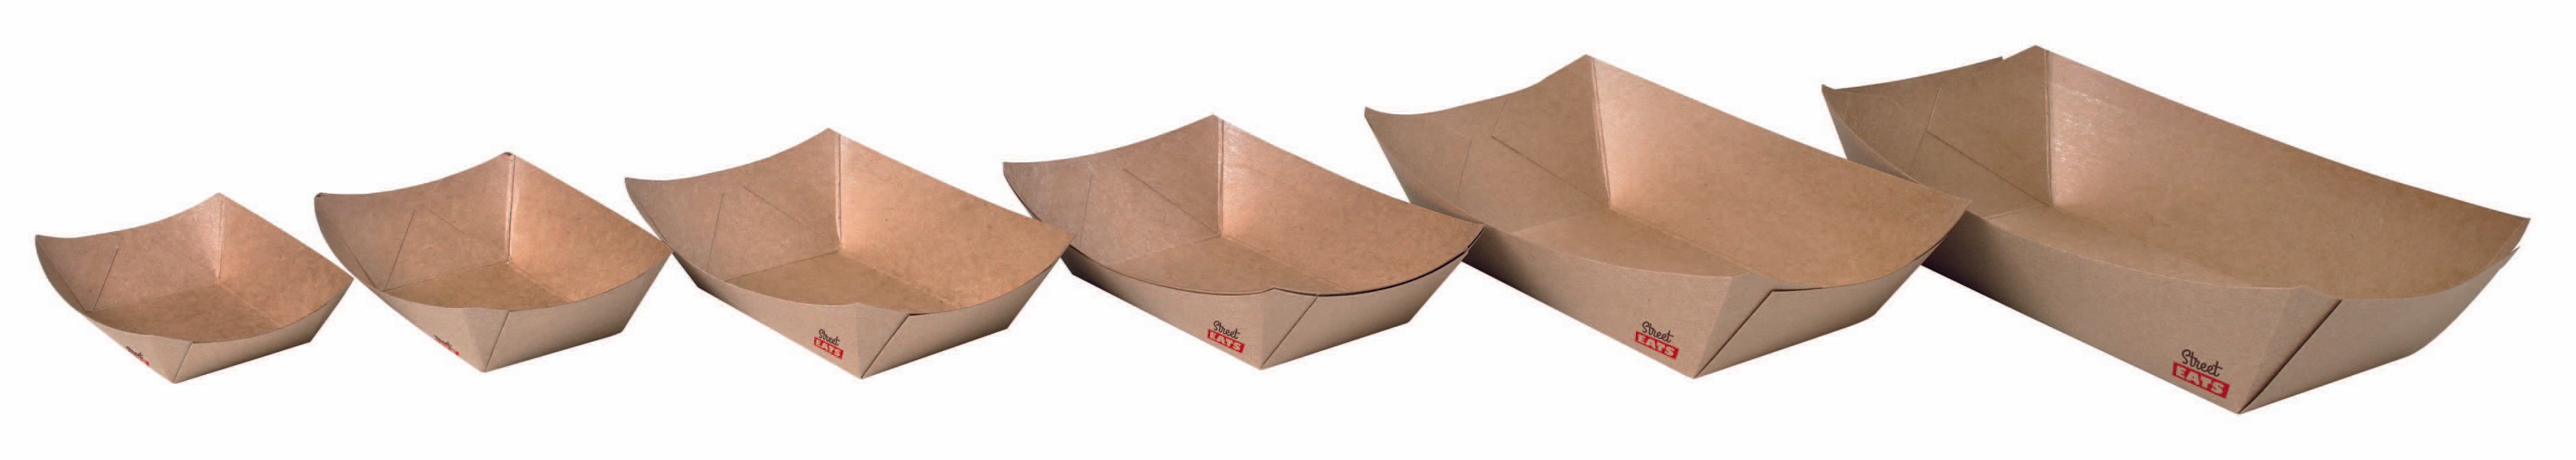 Multi Use Kraft Paper Boat -10oz L:6.3 X W:3.7 X H:1in 1000 Pcs/Cs